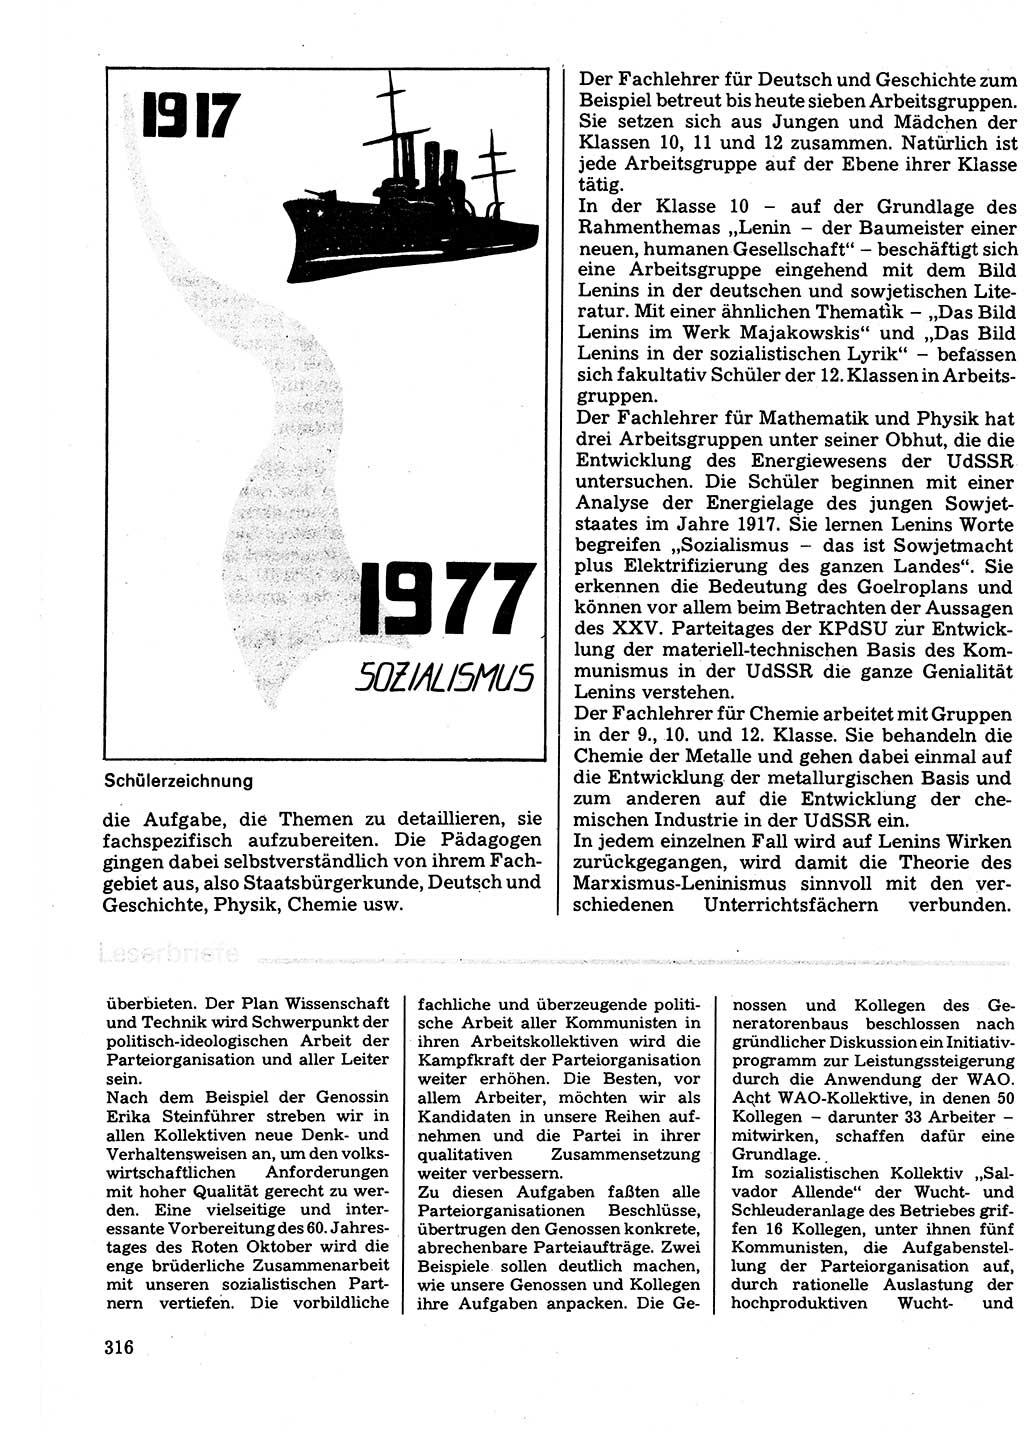 Neuer Weg (NW), Organ des Zentralkomitees (ZK) der SED (Sozialistische Einheitspartei Deutschlands) für Fragen des Parteilebens, 32. Jahrgang [Deutsche Demokratische Republik (DDR)] 1977, Seite 316 (NW ZK SED DDR 1977, S. 316)